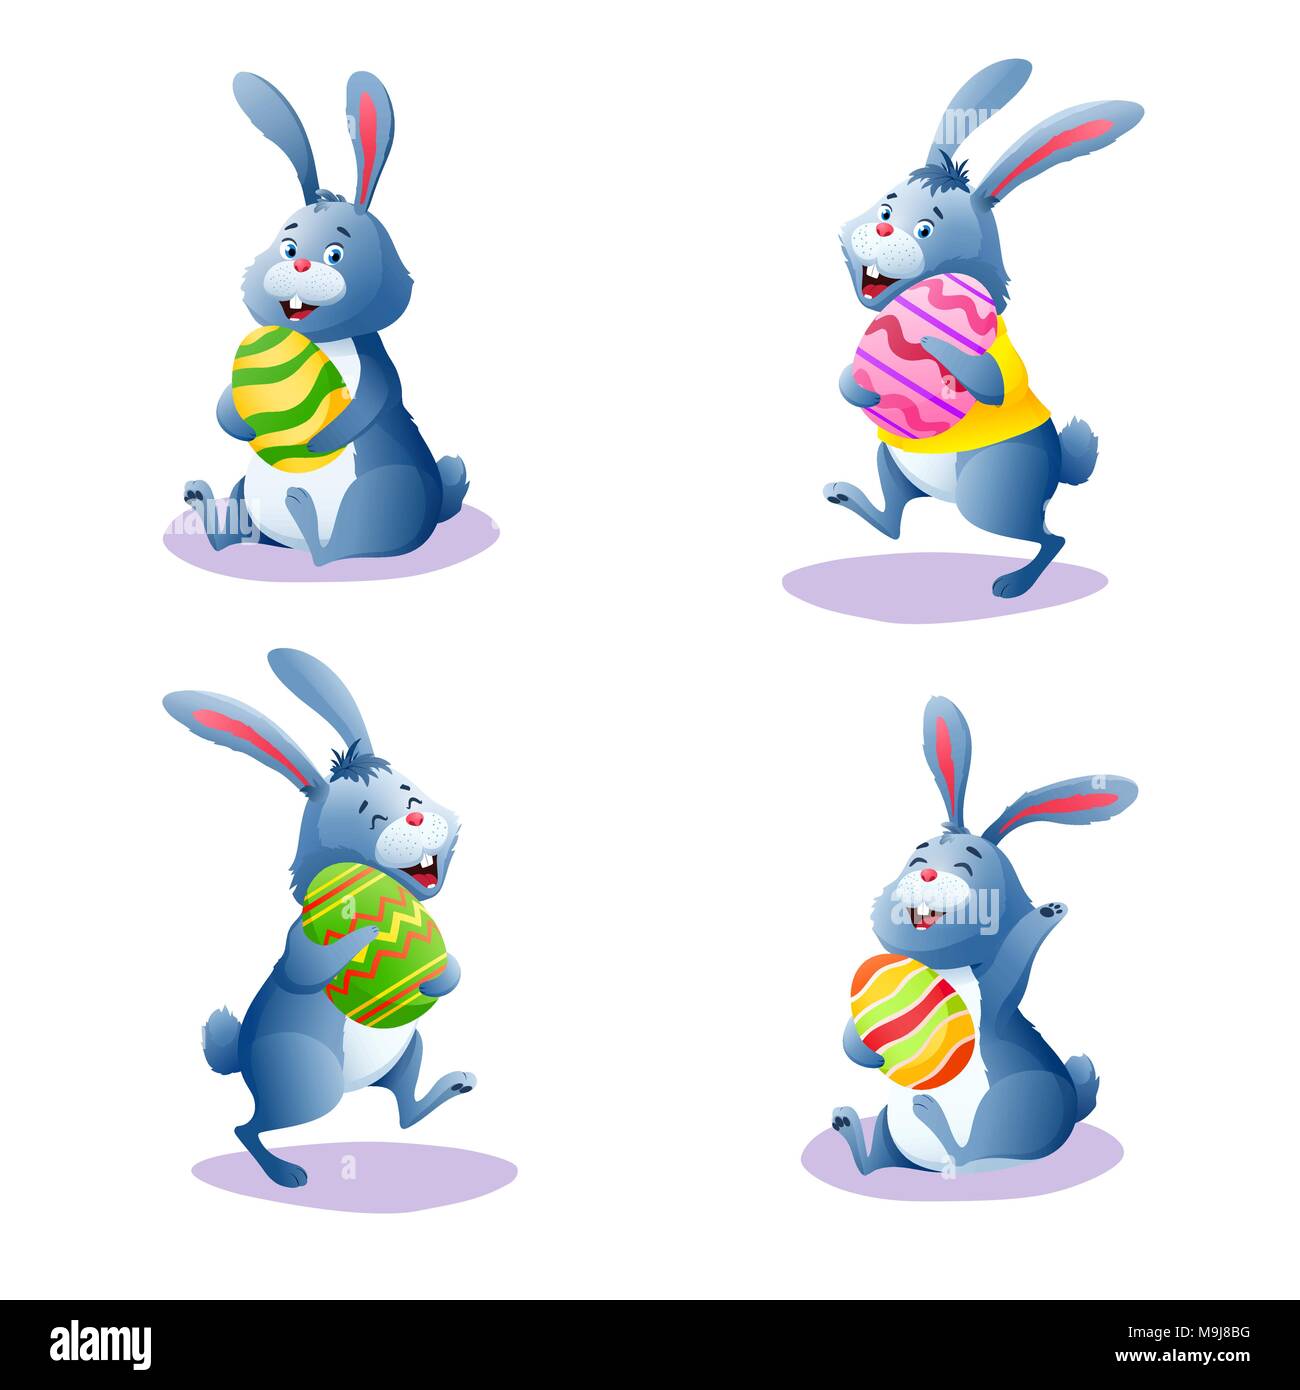 caricatura-conejo-con-chocolate-huevos-pintados-de-pascua-happy-bunny-coleccion-aislado-sobre-fondo-blanco-decoracion-para-tarjeta-de-felicitacion-banner-m9j8bg.jpg